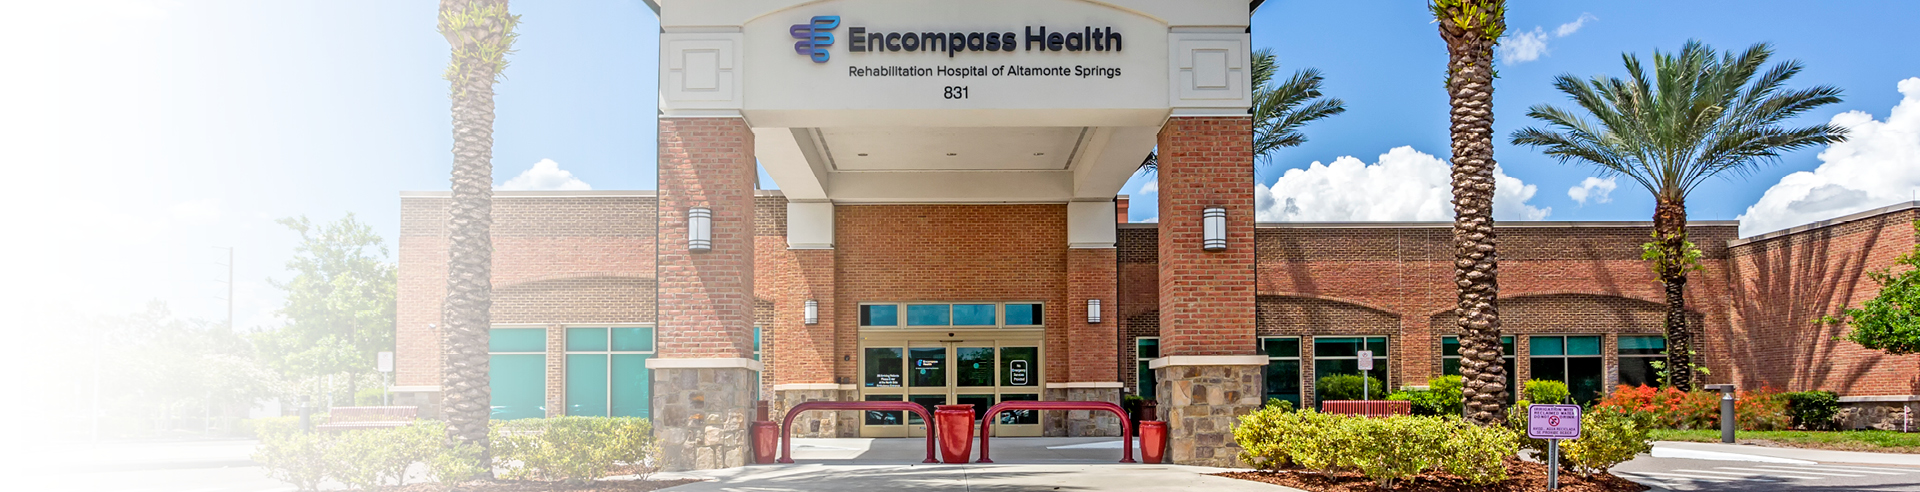 Encompass Health Rehabilitation Hospital of Altamonte Springs Exterior Image